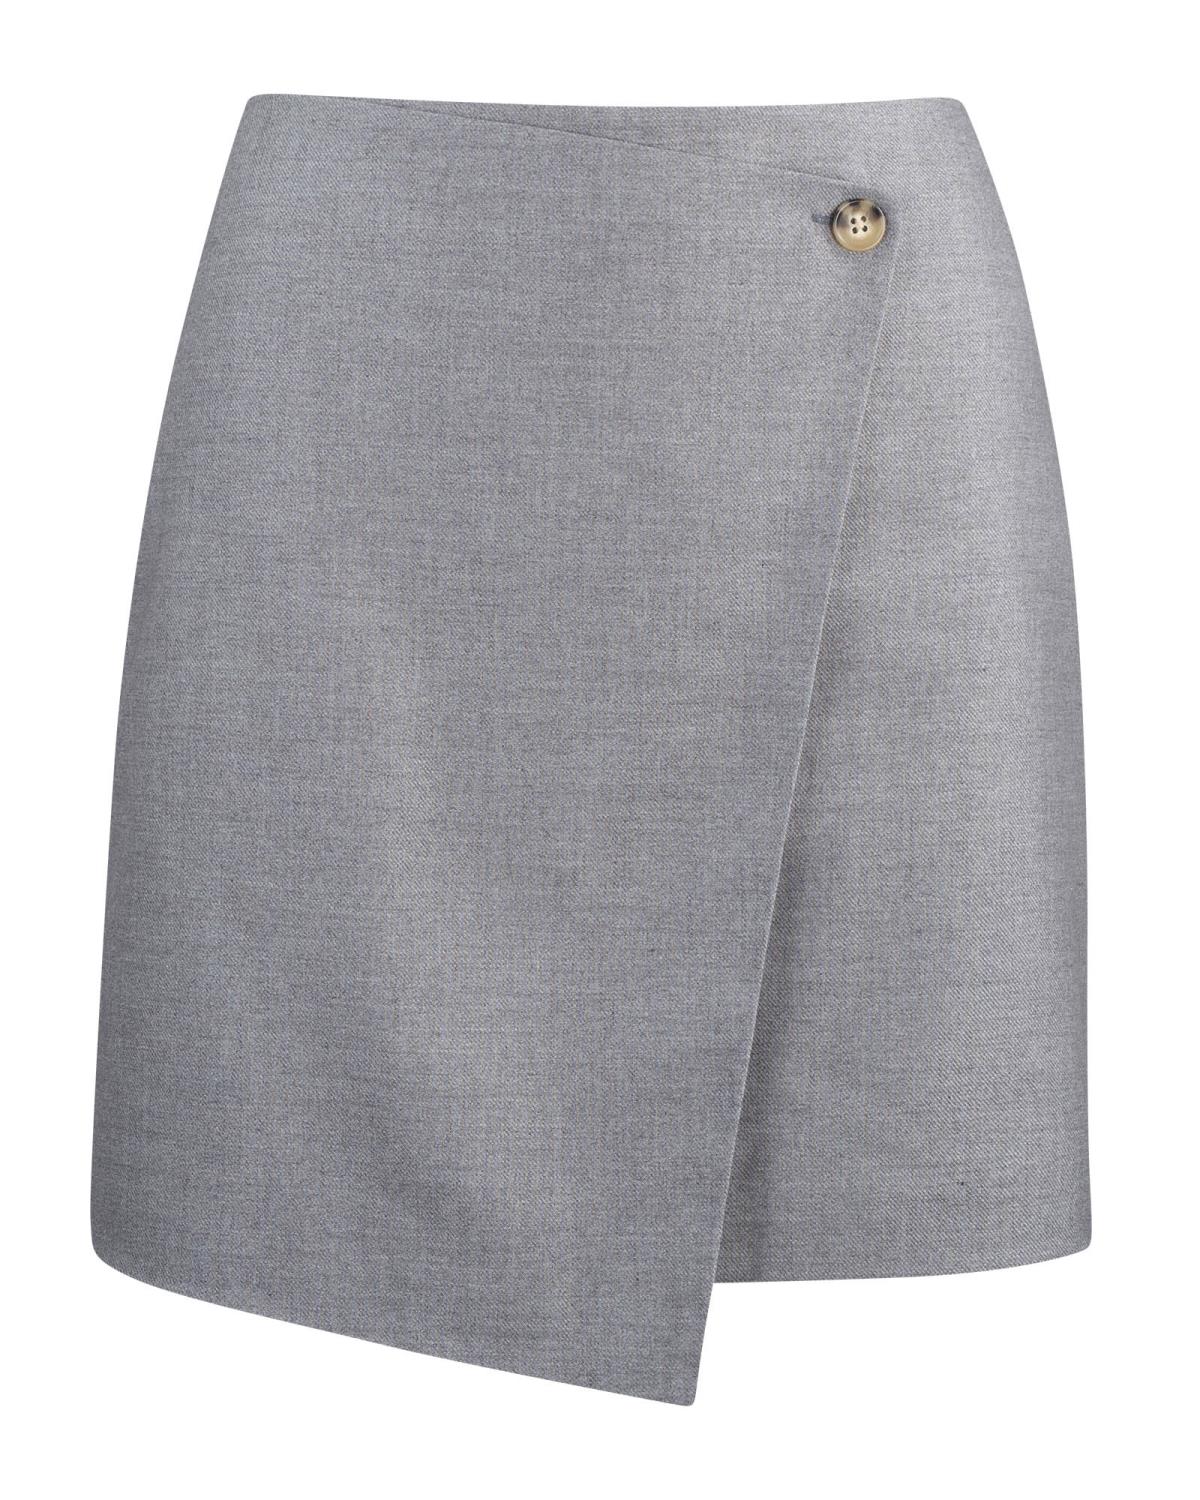 Aurora Skirt Grey - Urban Pioneers